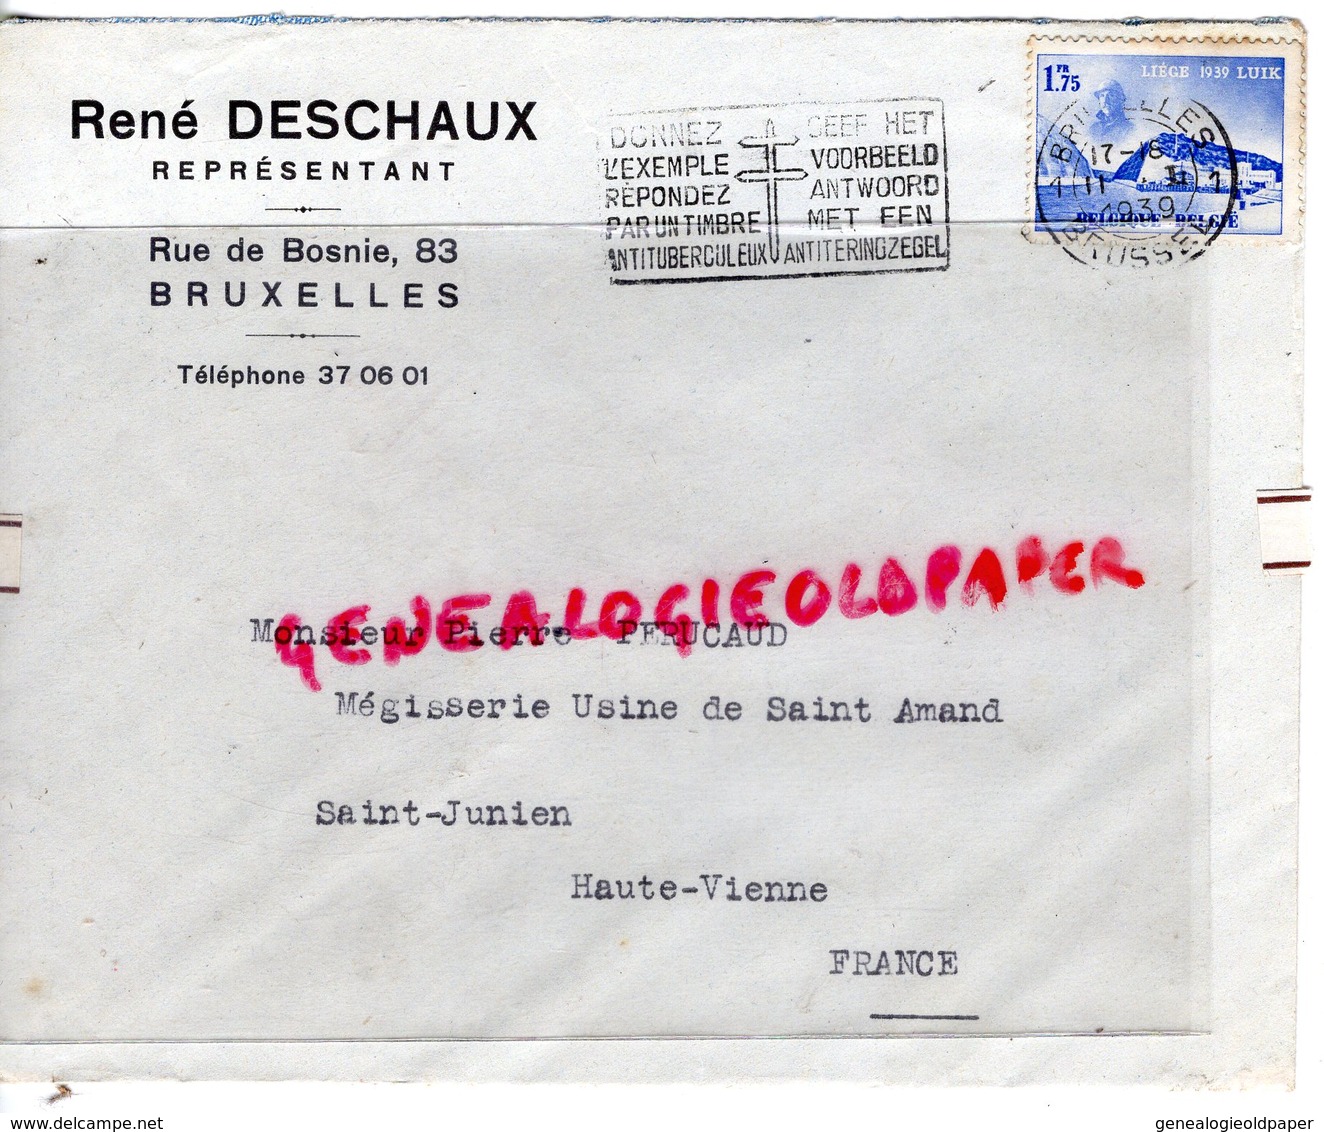 BELGIQUE-BRUXELLES- ENVELOPPE RENE DESCHAUX-REPRESENTANT 83 RUE DE BOSNIE-PIERRE PERUCAUD MEGISSERIE SAINT JUNIEN-1939 - Ambachten